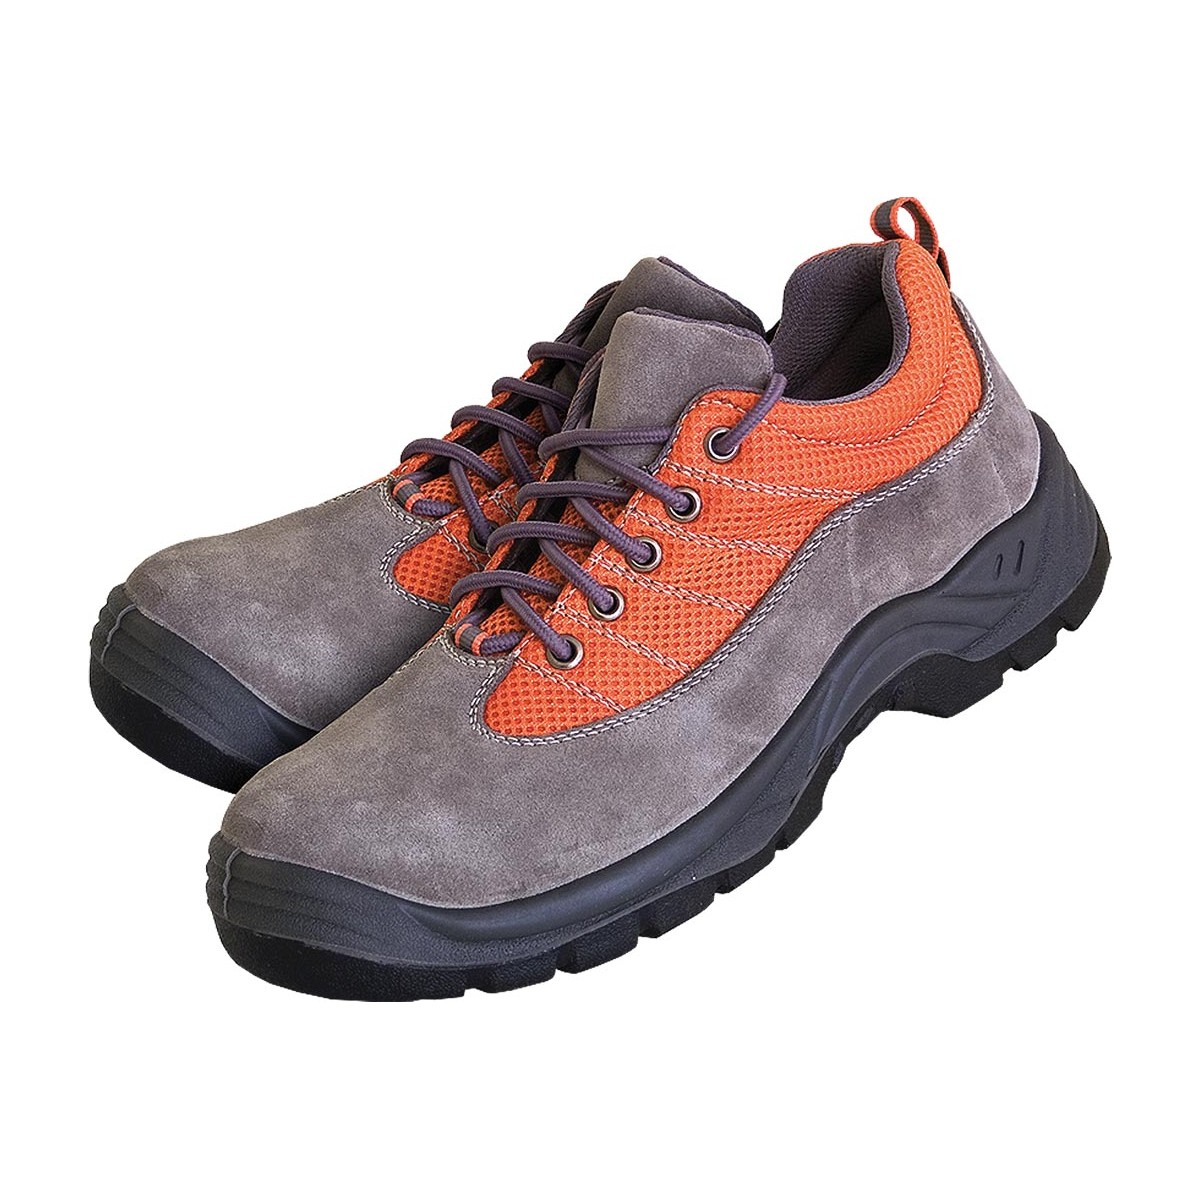 Buty bezpieczne XREIS stalowy podnosek S1, P, SRA r. 39 - 47